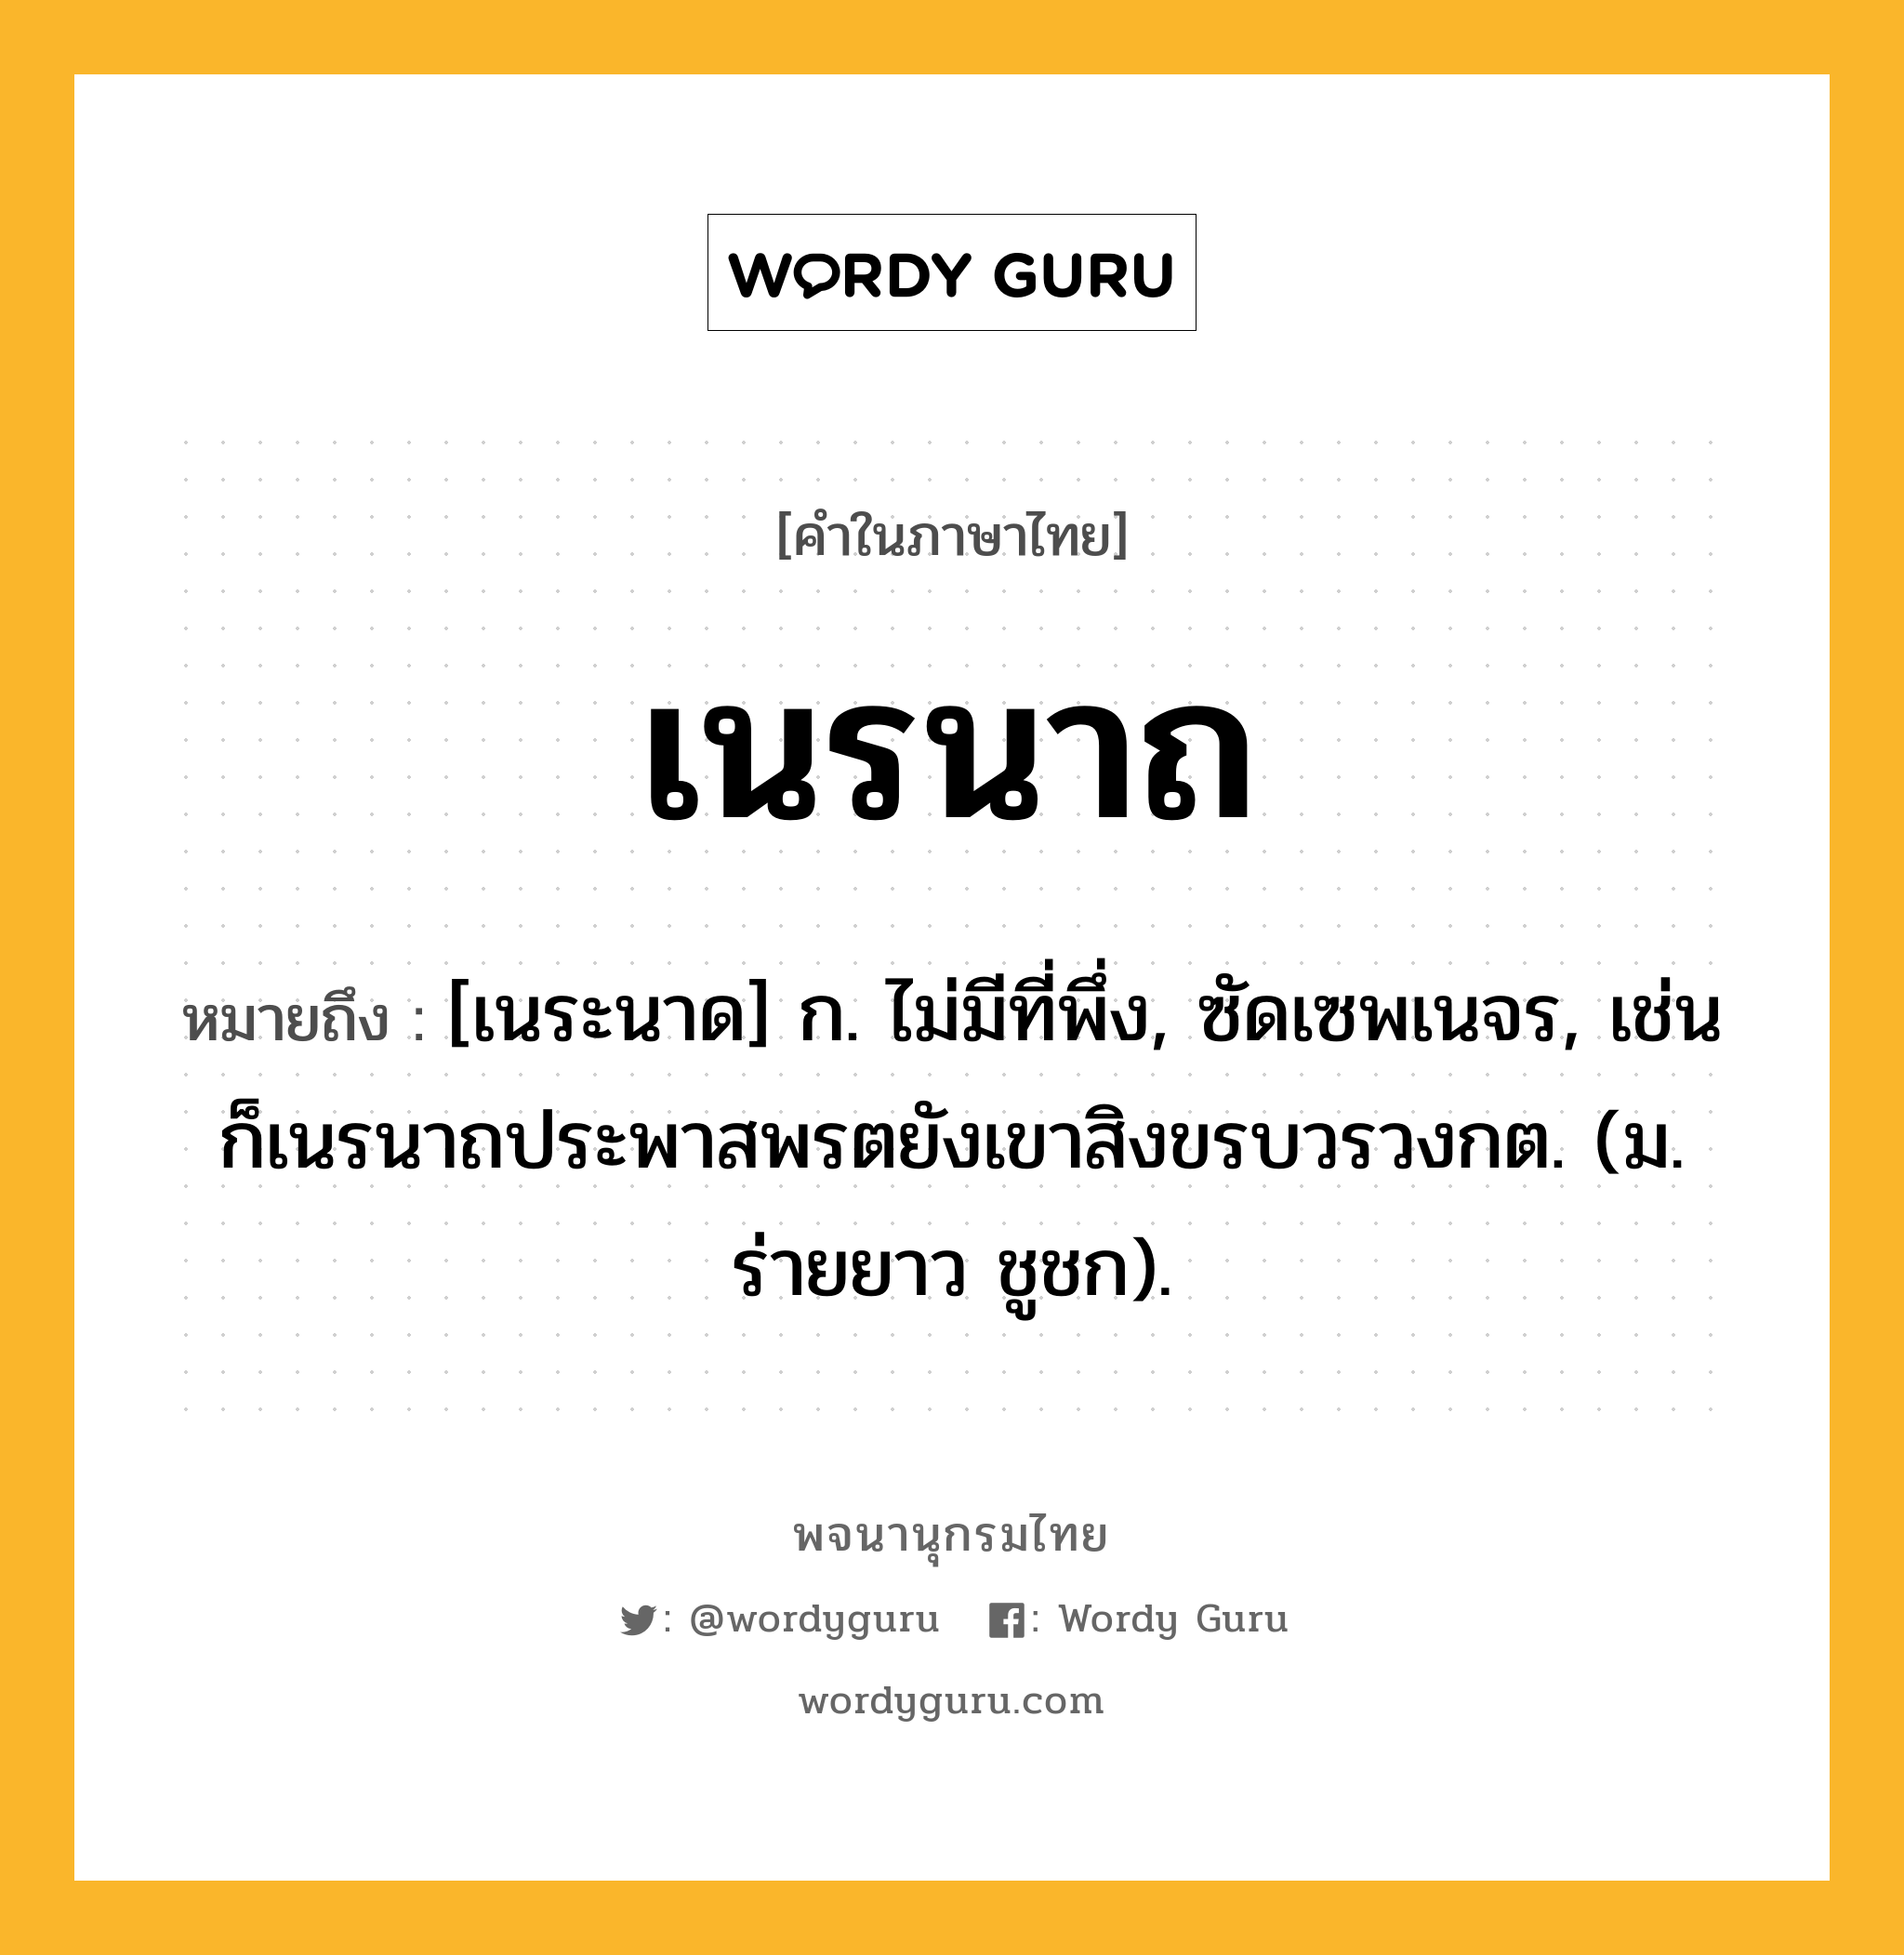 เนรนาถ ความหมาย หมายถึงอะไร?, คำในภาษาไทย เนรนาถ หมายถึง [เนระนาด] ก. ไม่มีที่พึ่ง, ซัดเซพเนจร, เช่น ก็เนรนาถประพาสพรตยังเขาสิงขรบวรวงกต. (ม. ร่ายยาว ชูชก).